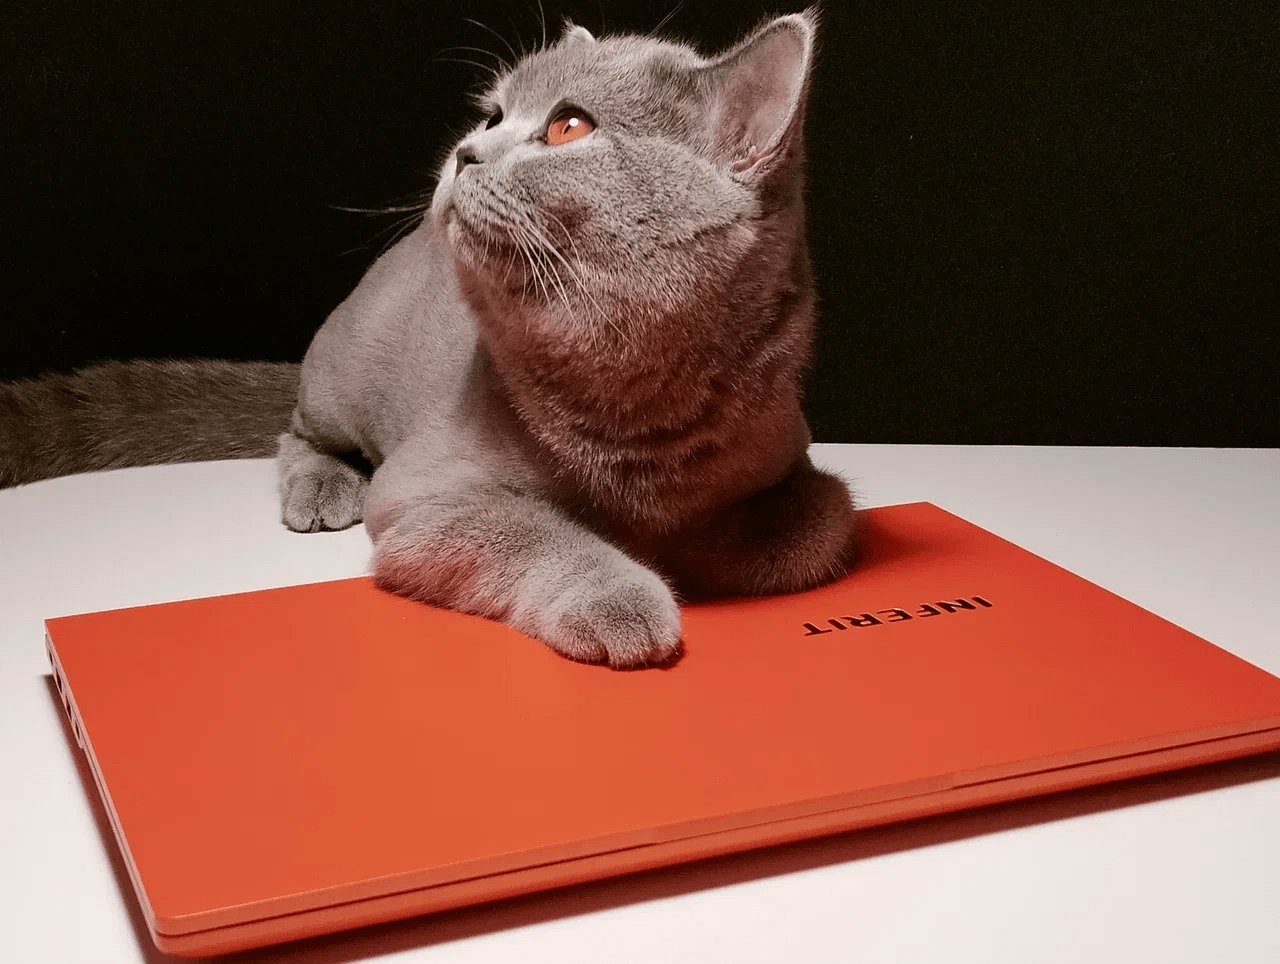 кот и ноутбук